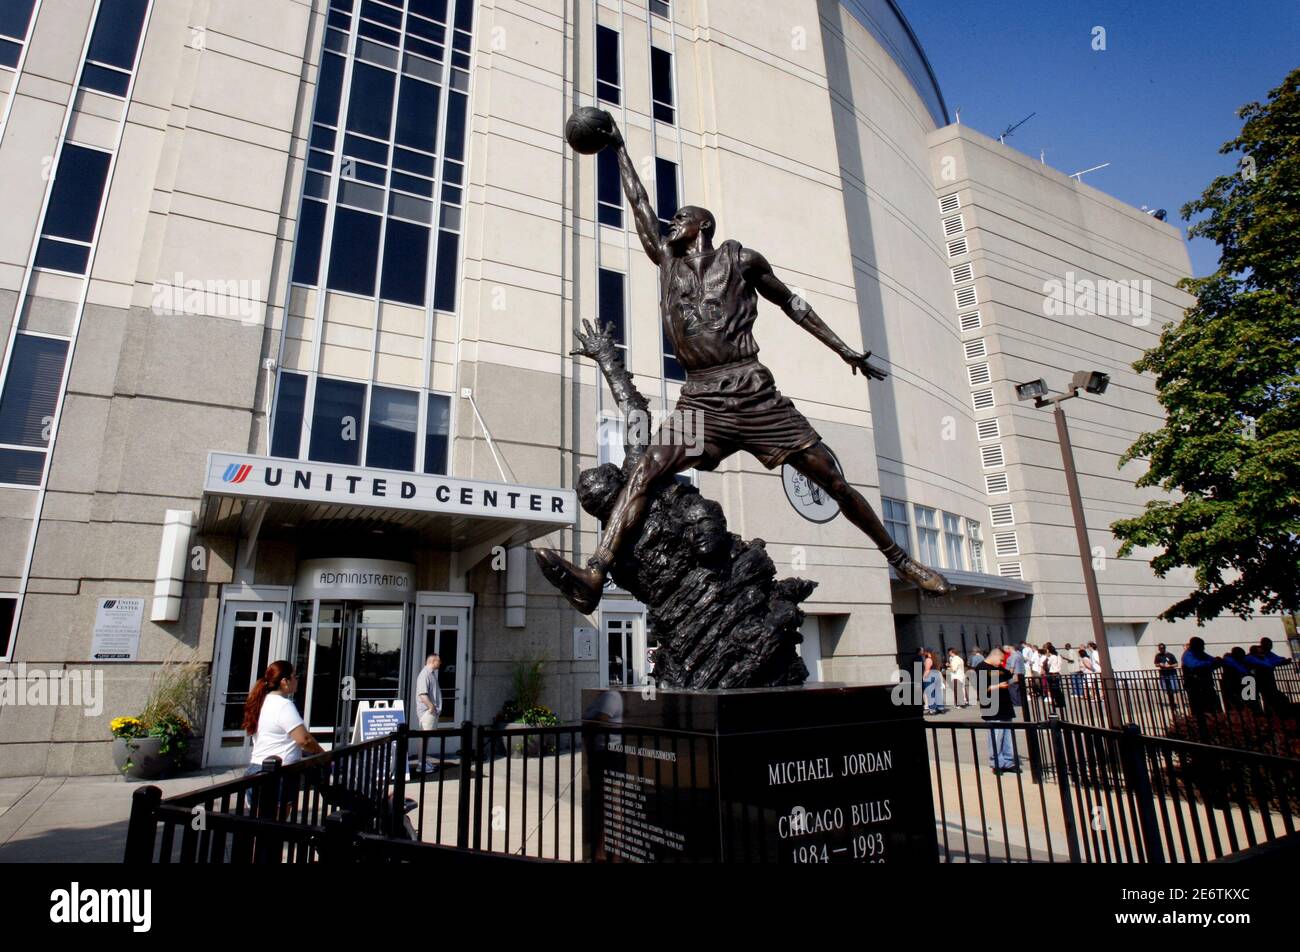 CHICAGO, USA- 6 OKTOBER 2007: Match Arena United Center à Chicago. Statue de Michael Jordan à l'extérieur. Banque D'Images